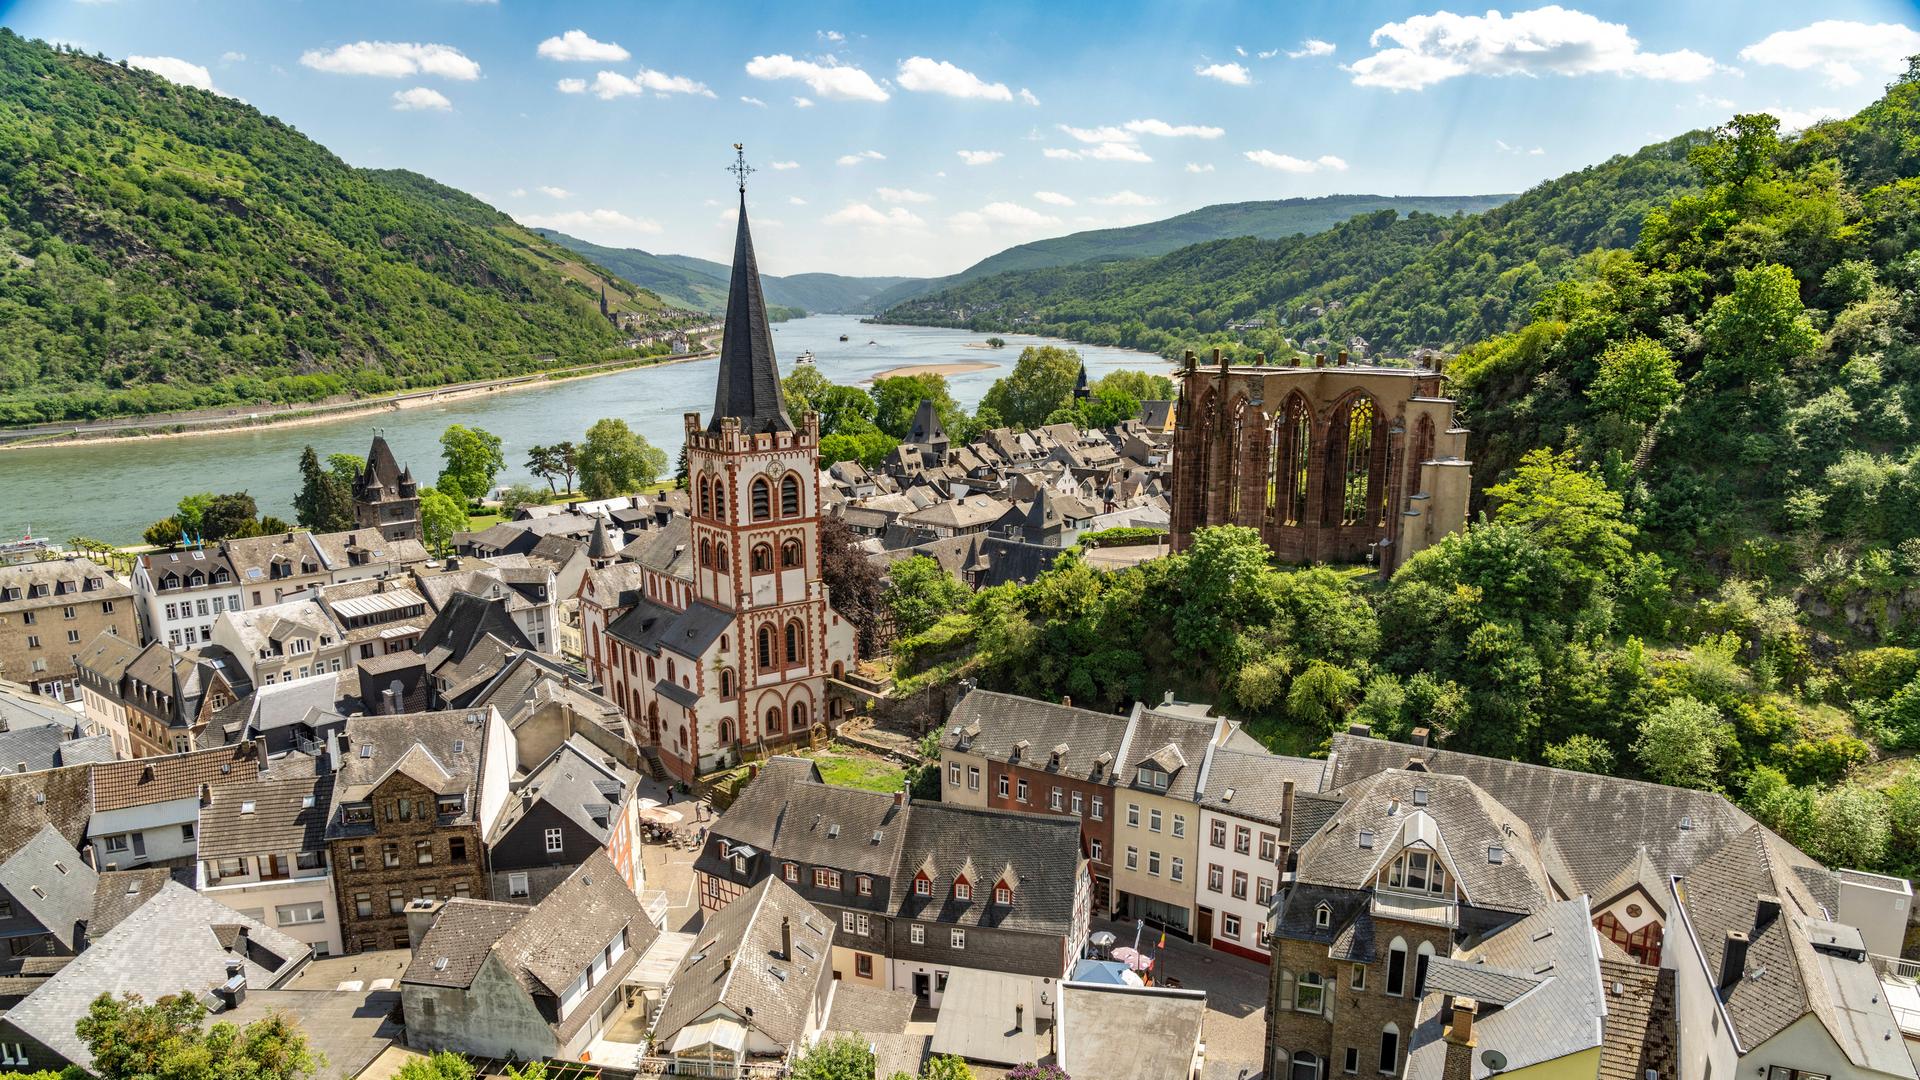 Über der Altstadt von Bacharach ragen die Evangelische Kirche St. Peter und die gotische Wernerkapelle auf. Im Hintergrund sind der Rhein und bewaldete Hügel zu sehen.